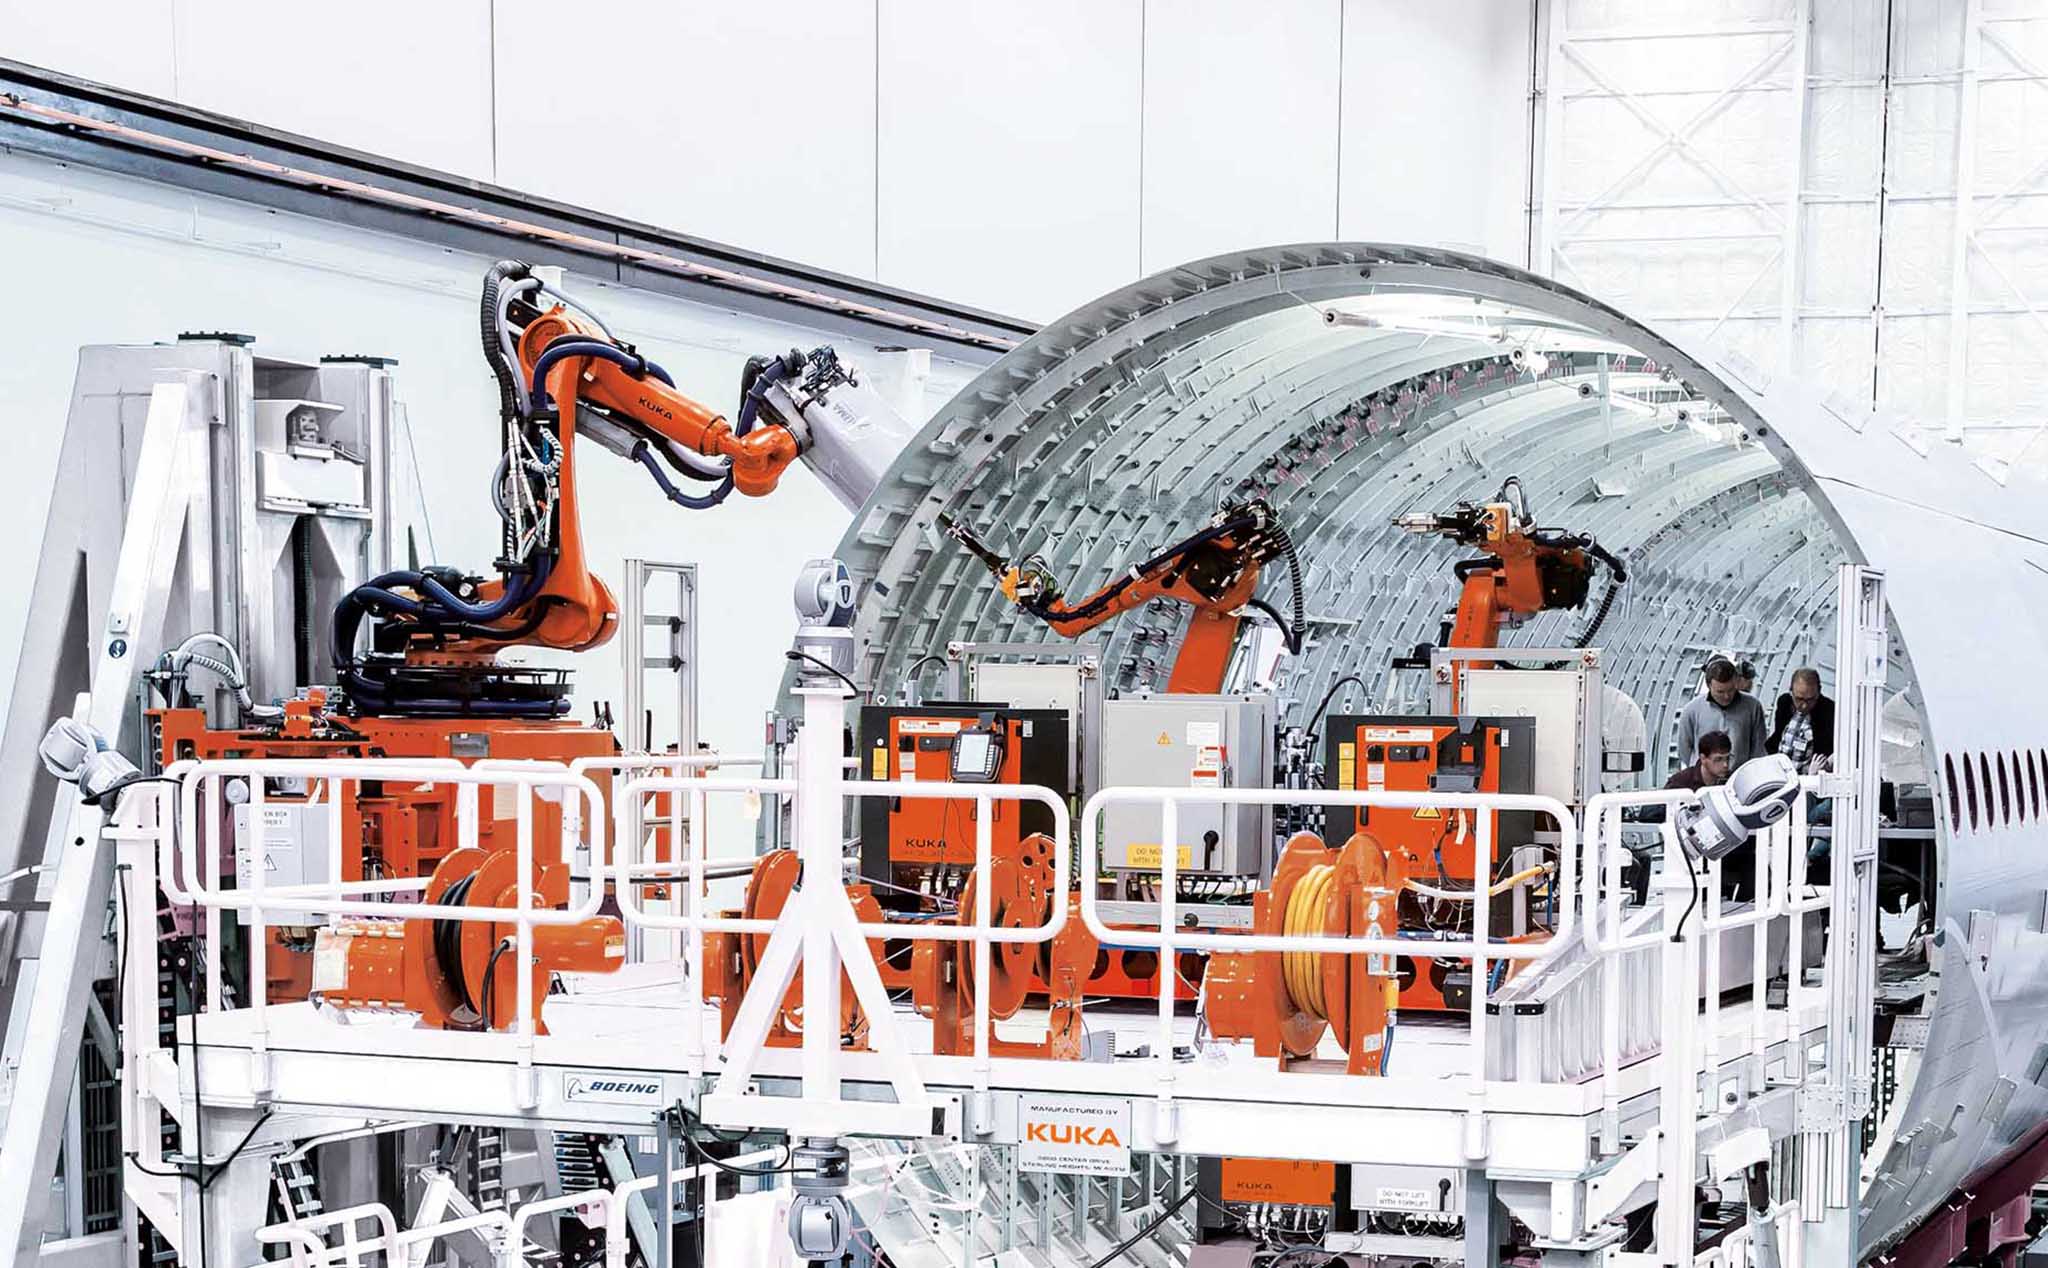 Sau 6 năm khai thác thiếu hiệu quả, Boeing buộc phải loại bỏ hệ thống robot lắp ráp tự động dòng 777